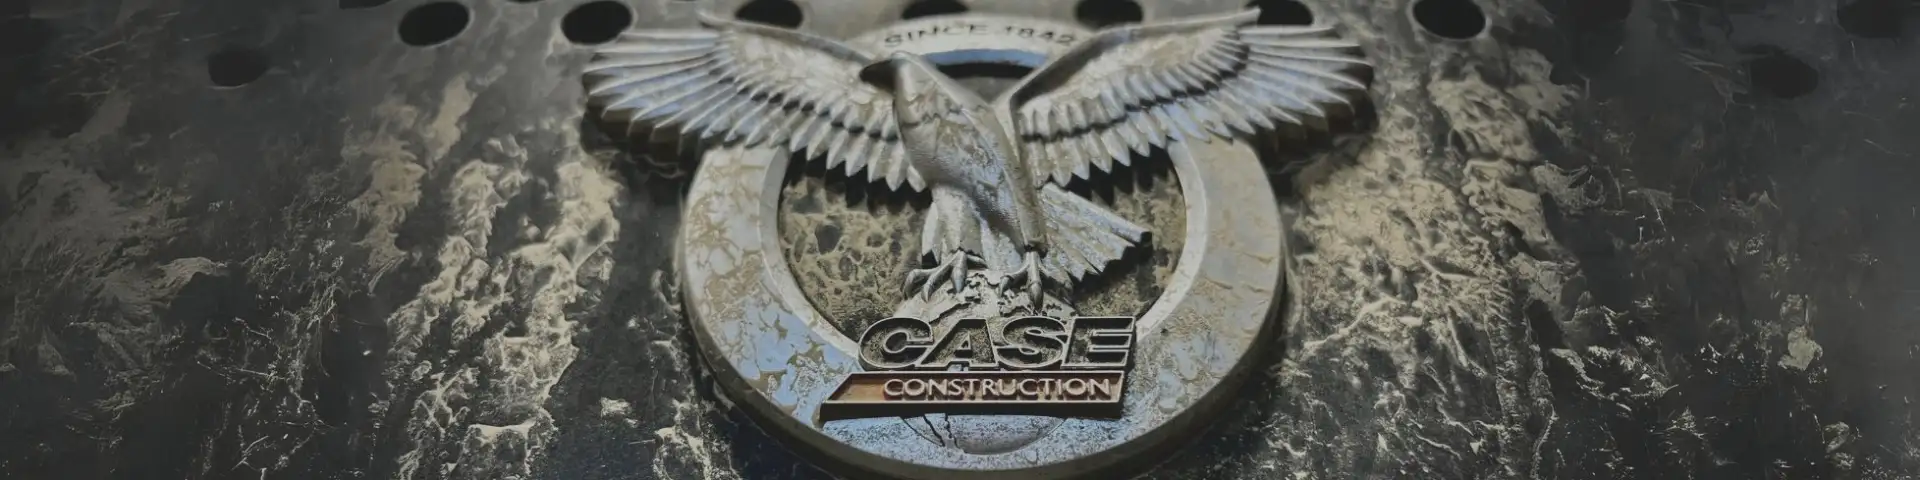 CASE Construction emblem